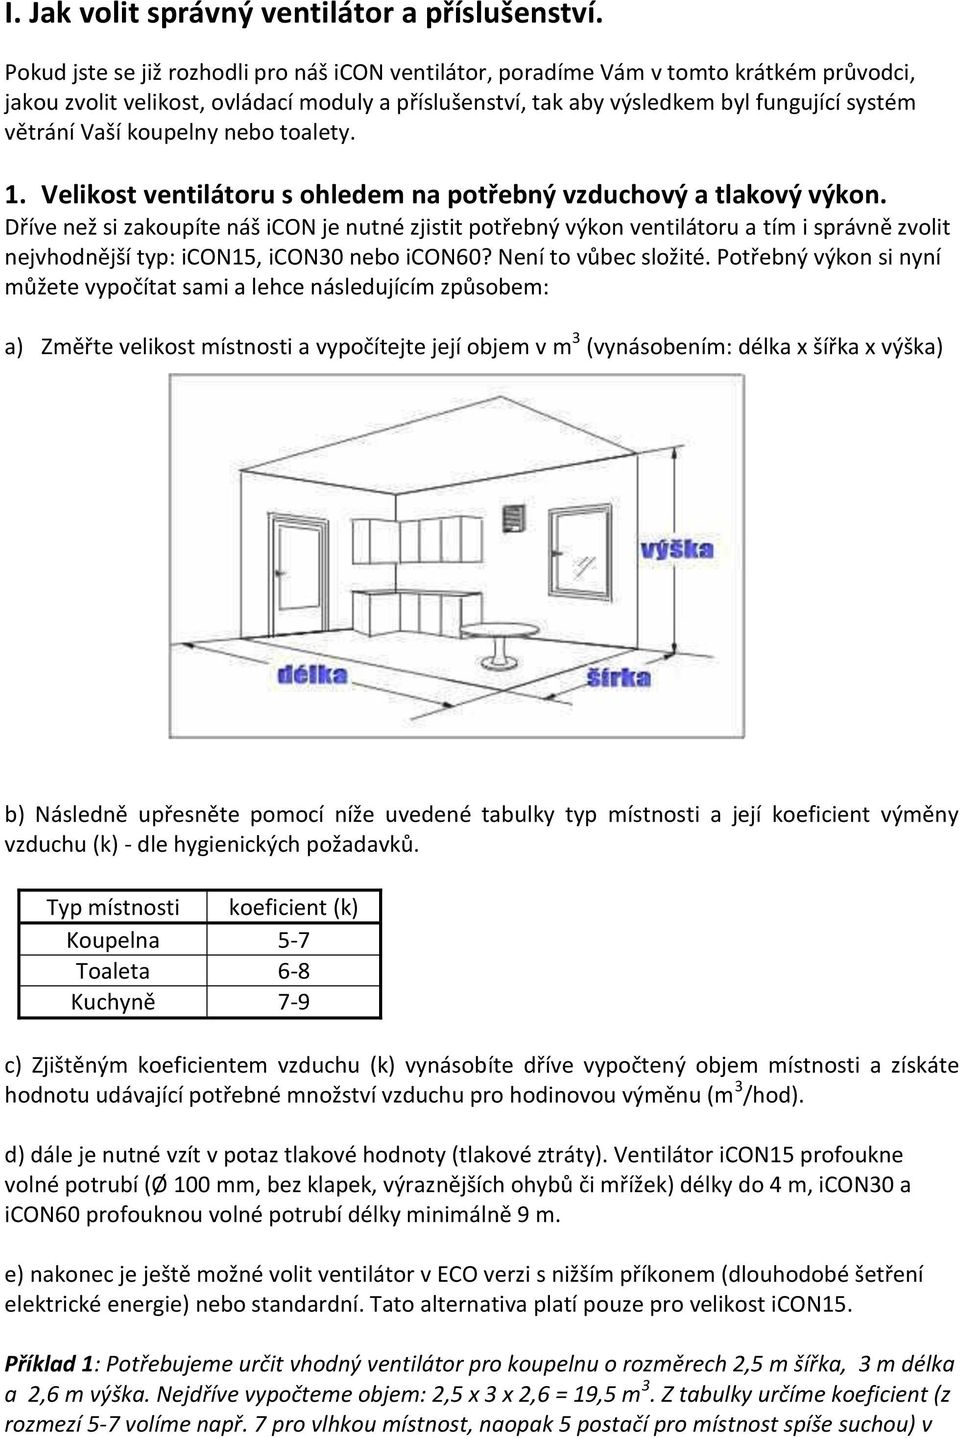 Jak volit správný ventilátor a příslušenství - PDF Stažení zdarma